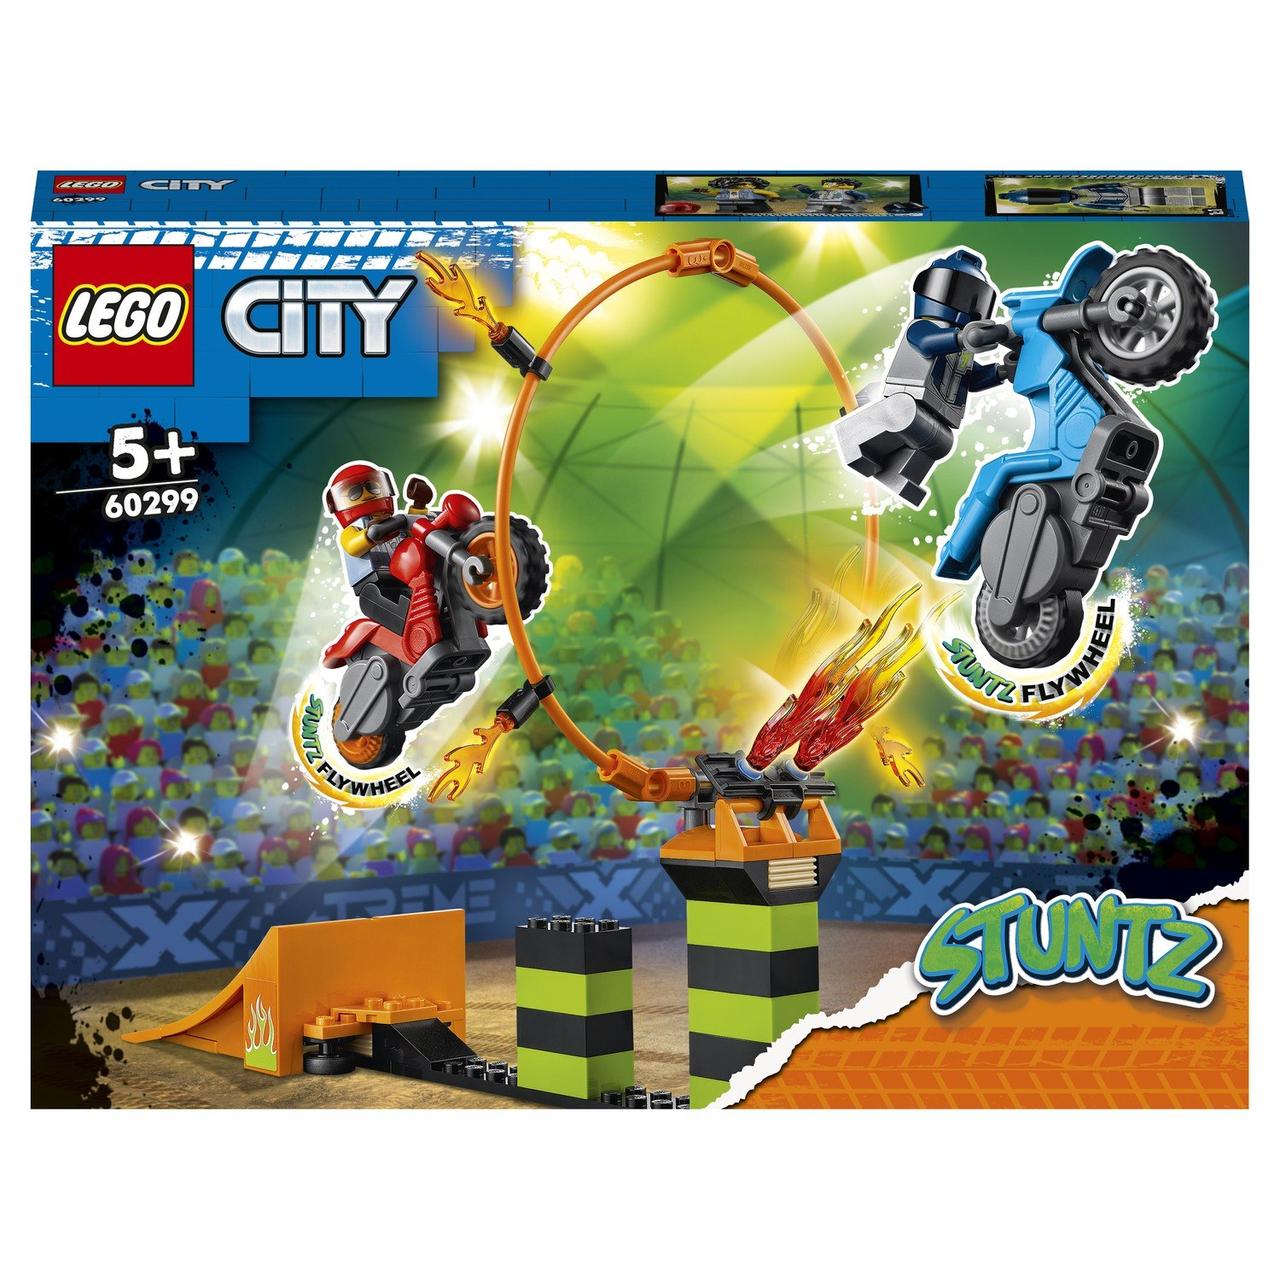 60299 Lego City Stuntz Состязание трюков каскадёров, Лего город Сити